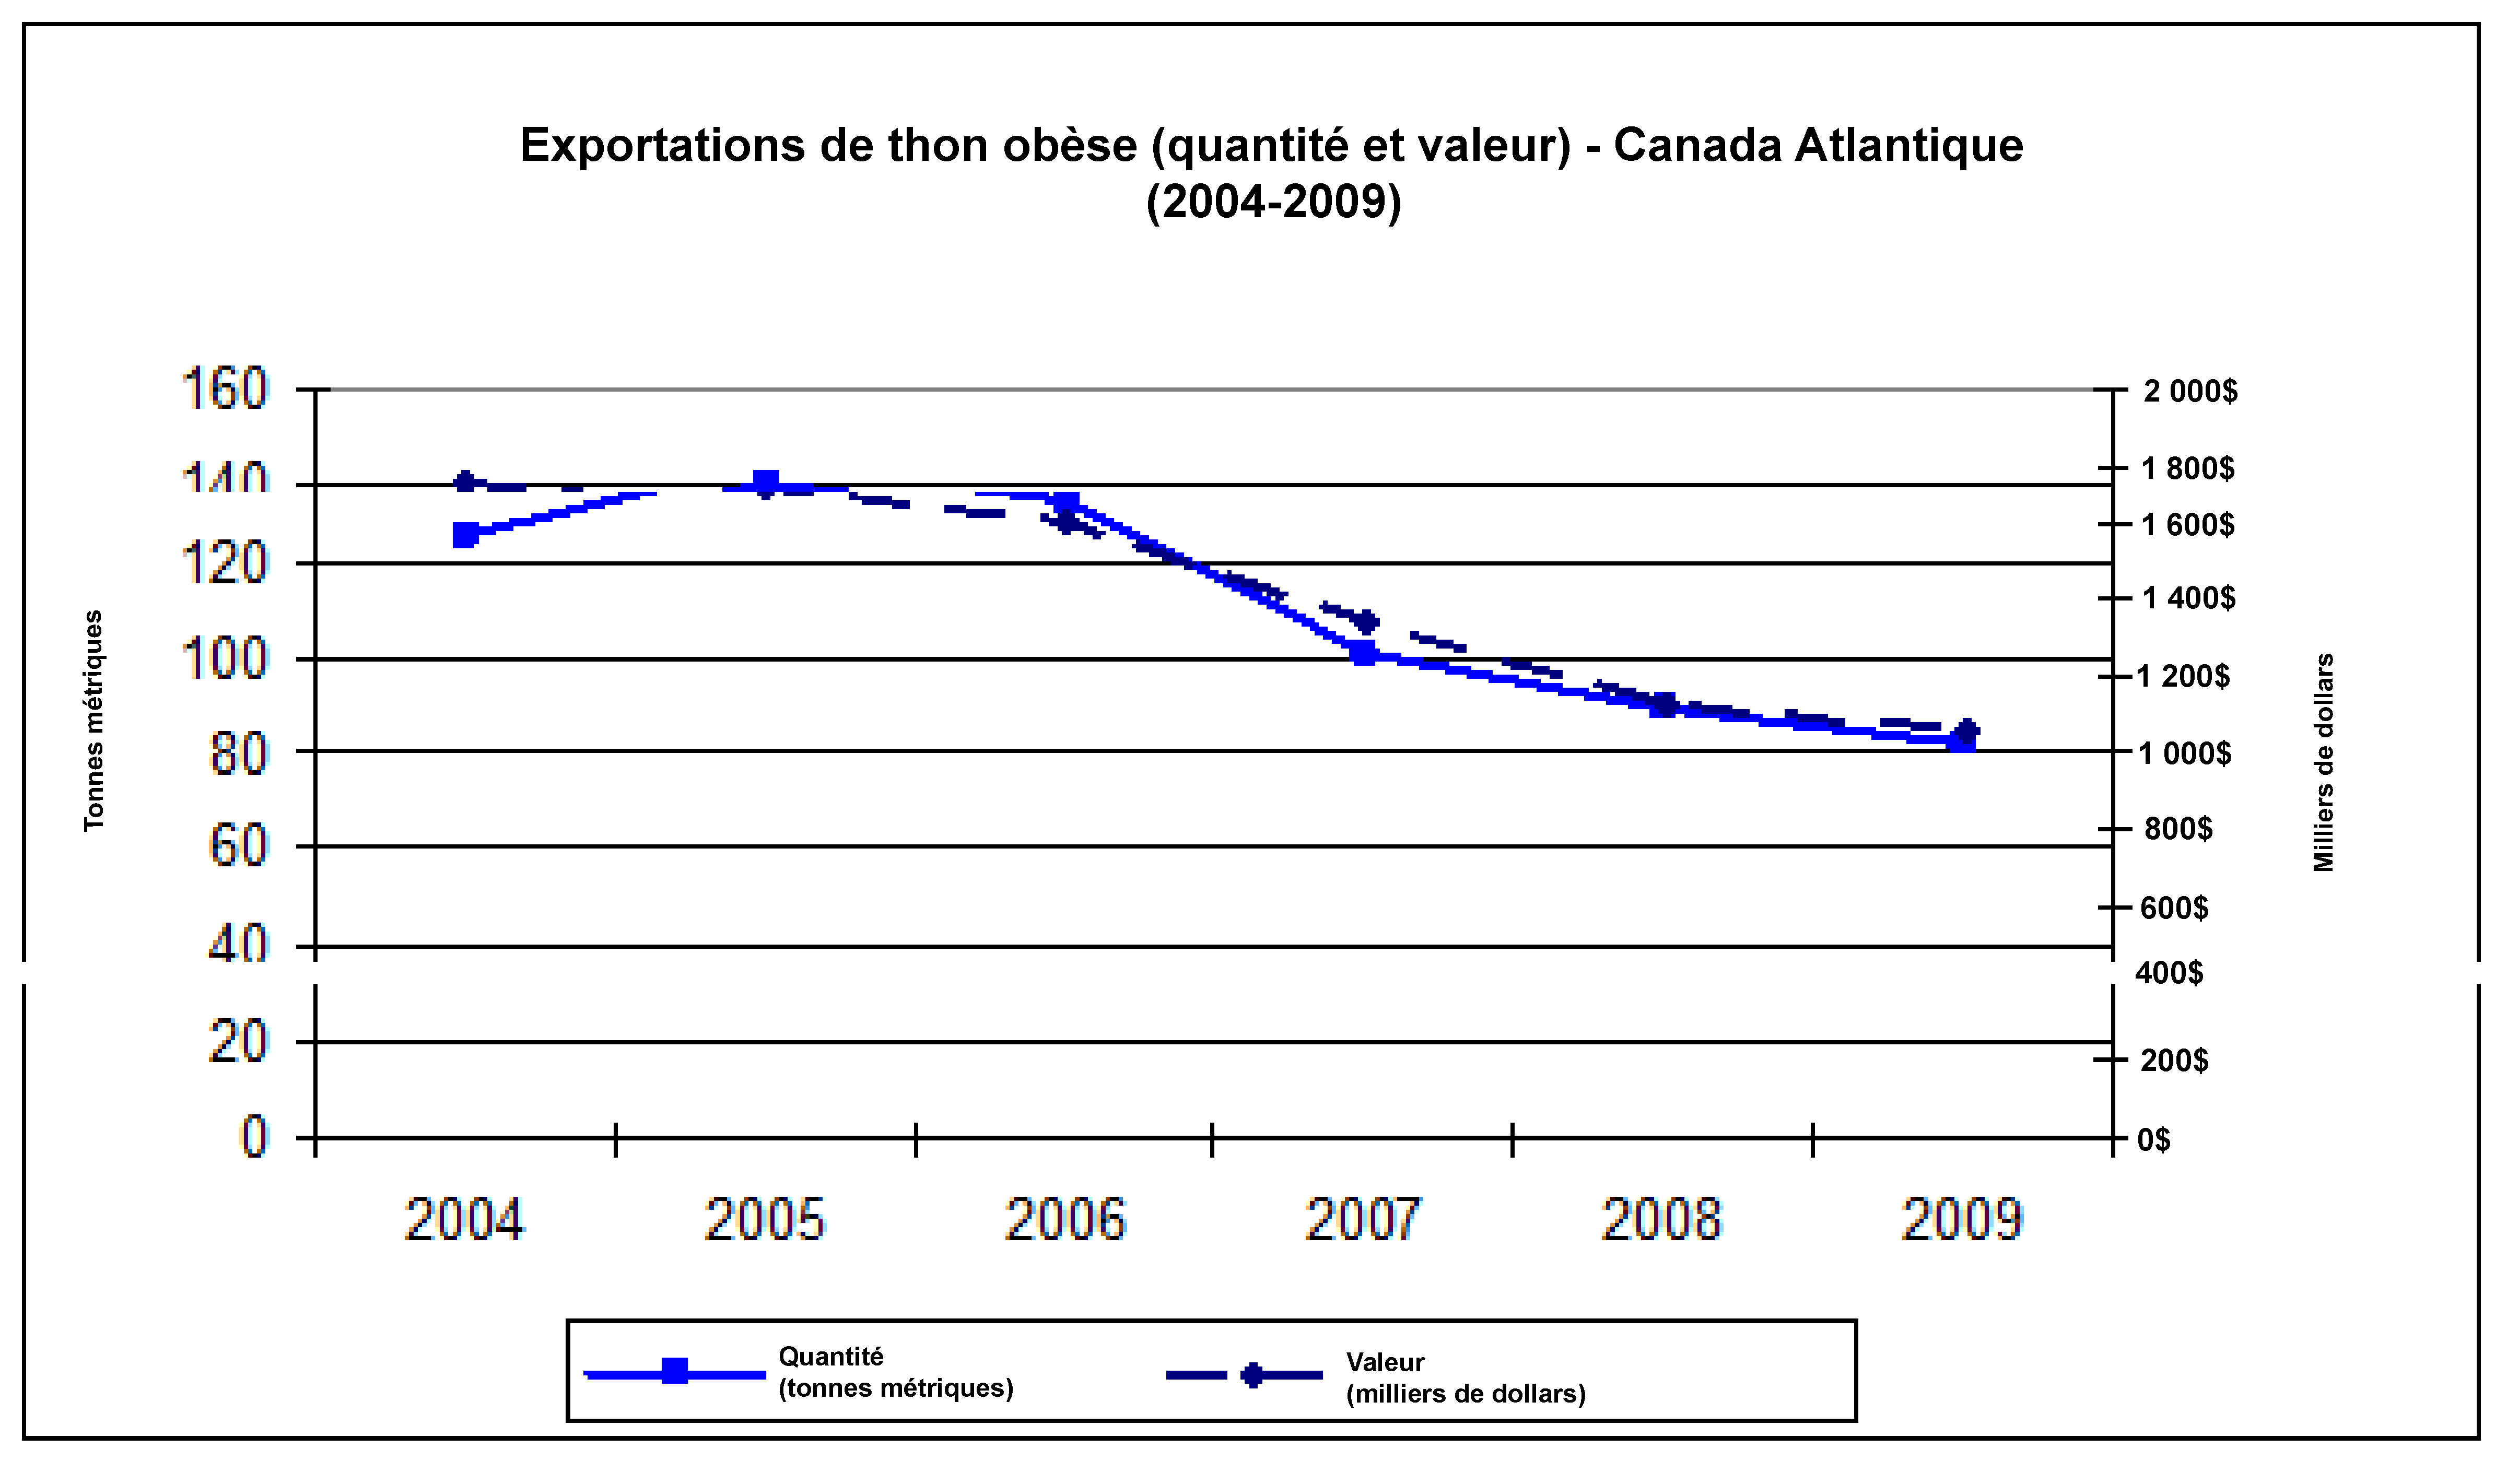 Quantité et valeur des exportations de thon obèse